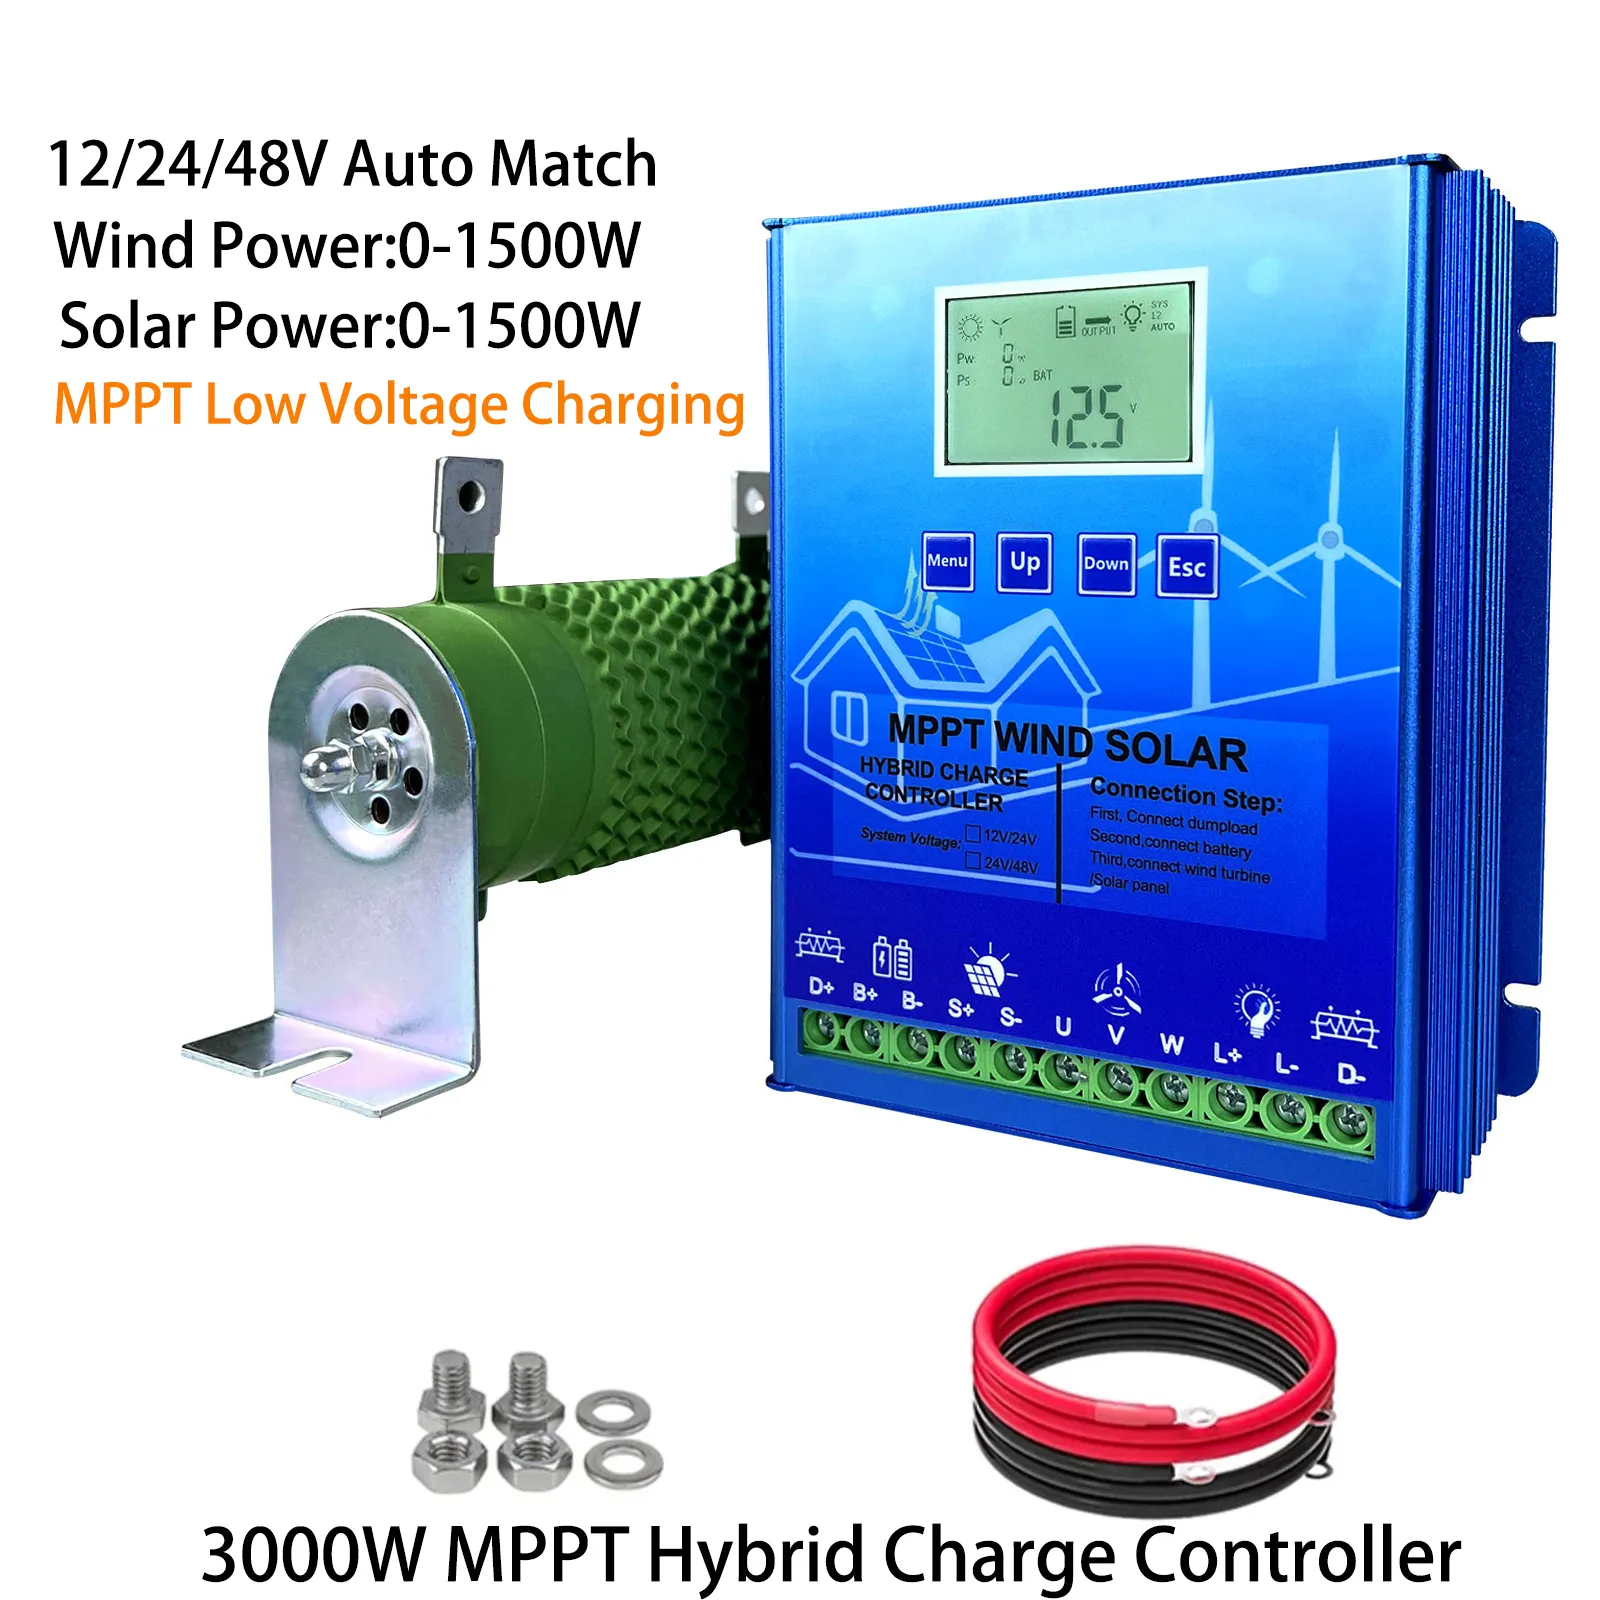 3000W 2400W 2000W 1600W 1200W MPPT Hybrid Wind Solar Charge Controller Turbine Generator Solar Panel Booster Controller för 12V 24V 48V All Battery